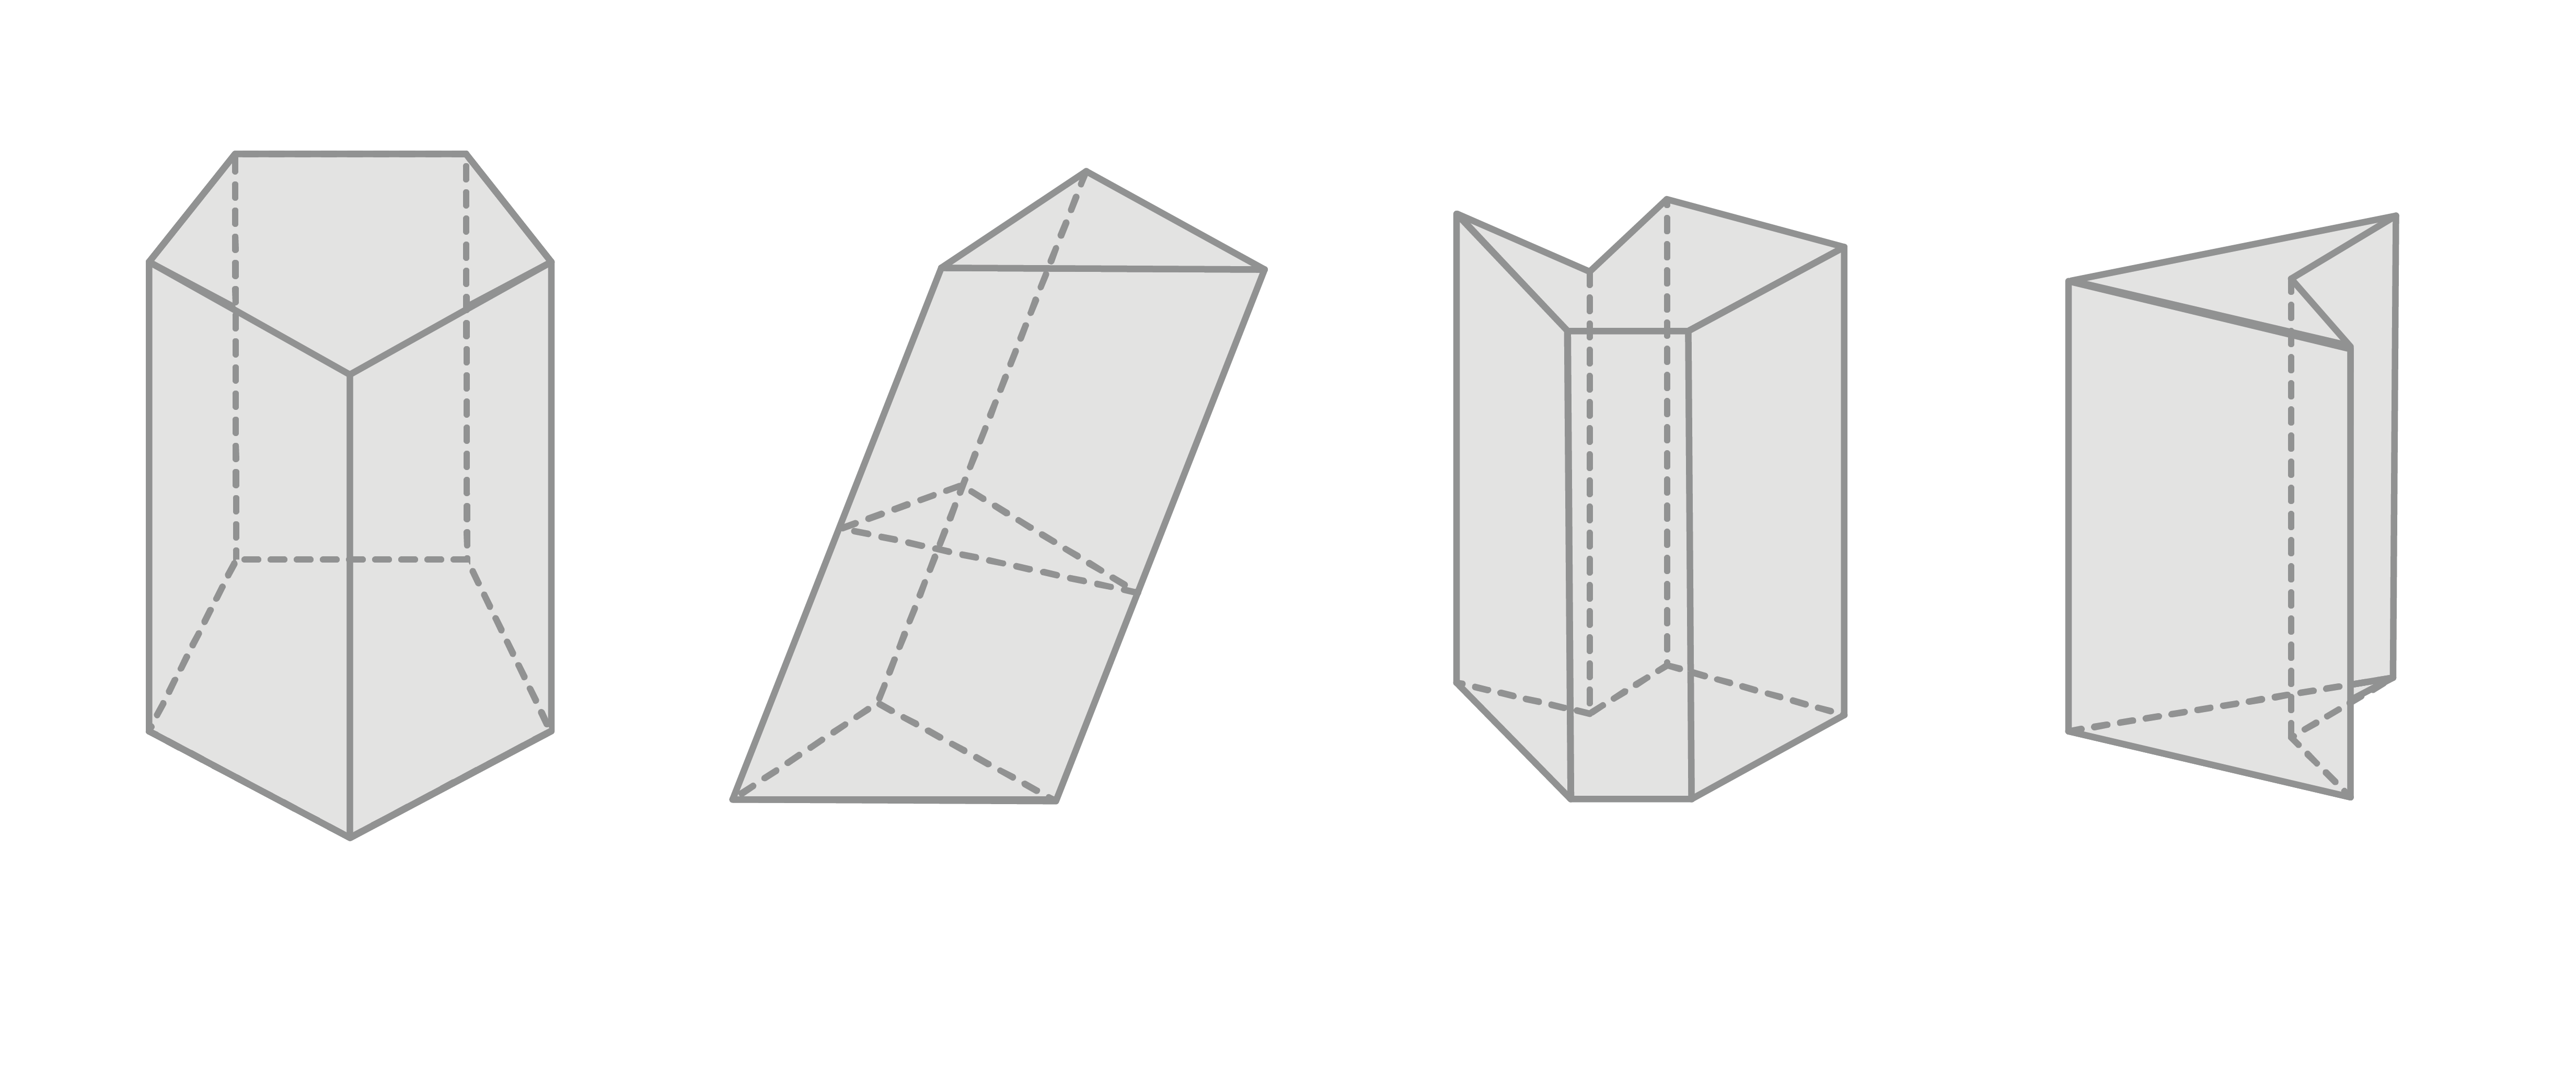 Matemáticas; Poliedros; 2. ESO; Características y tipos de poliedros